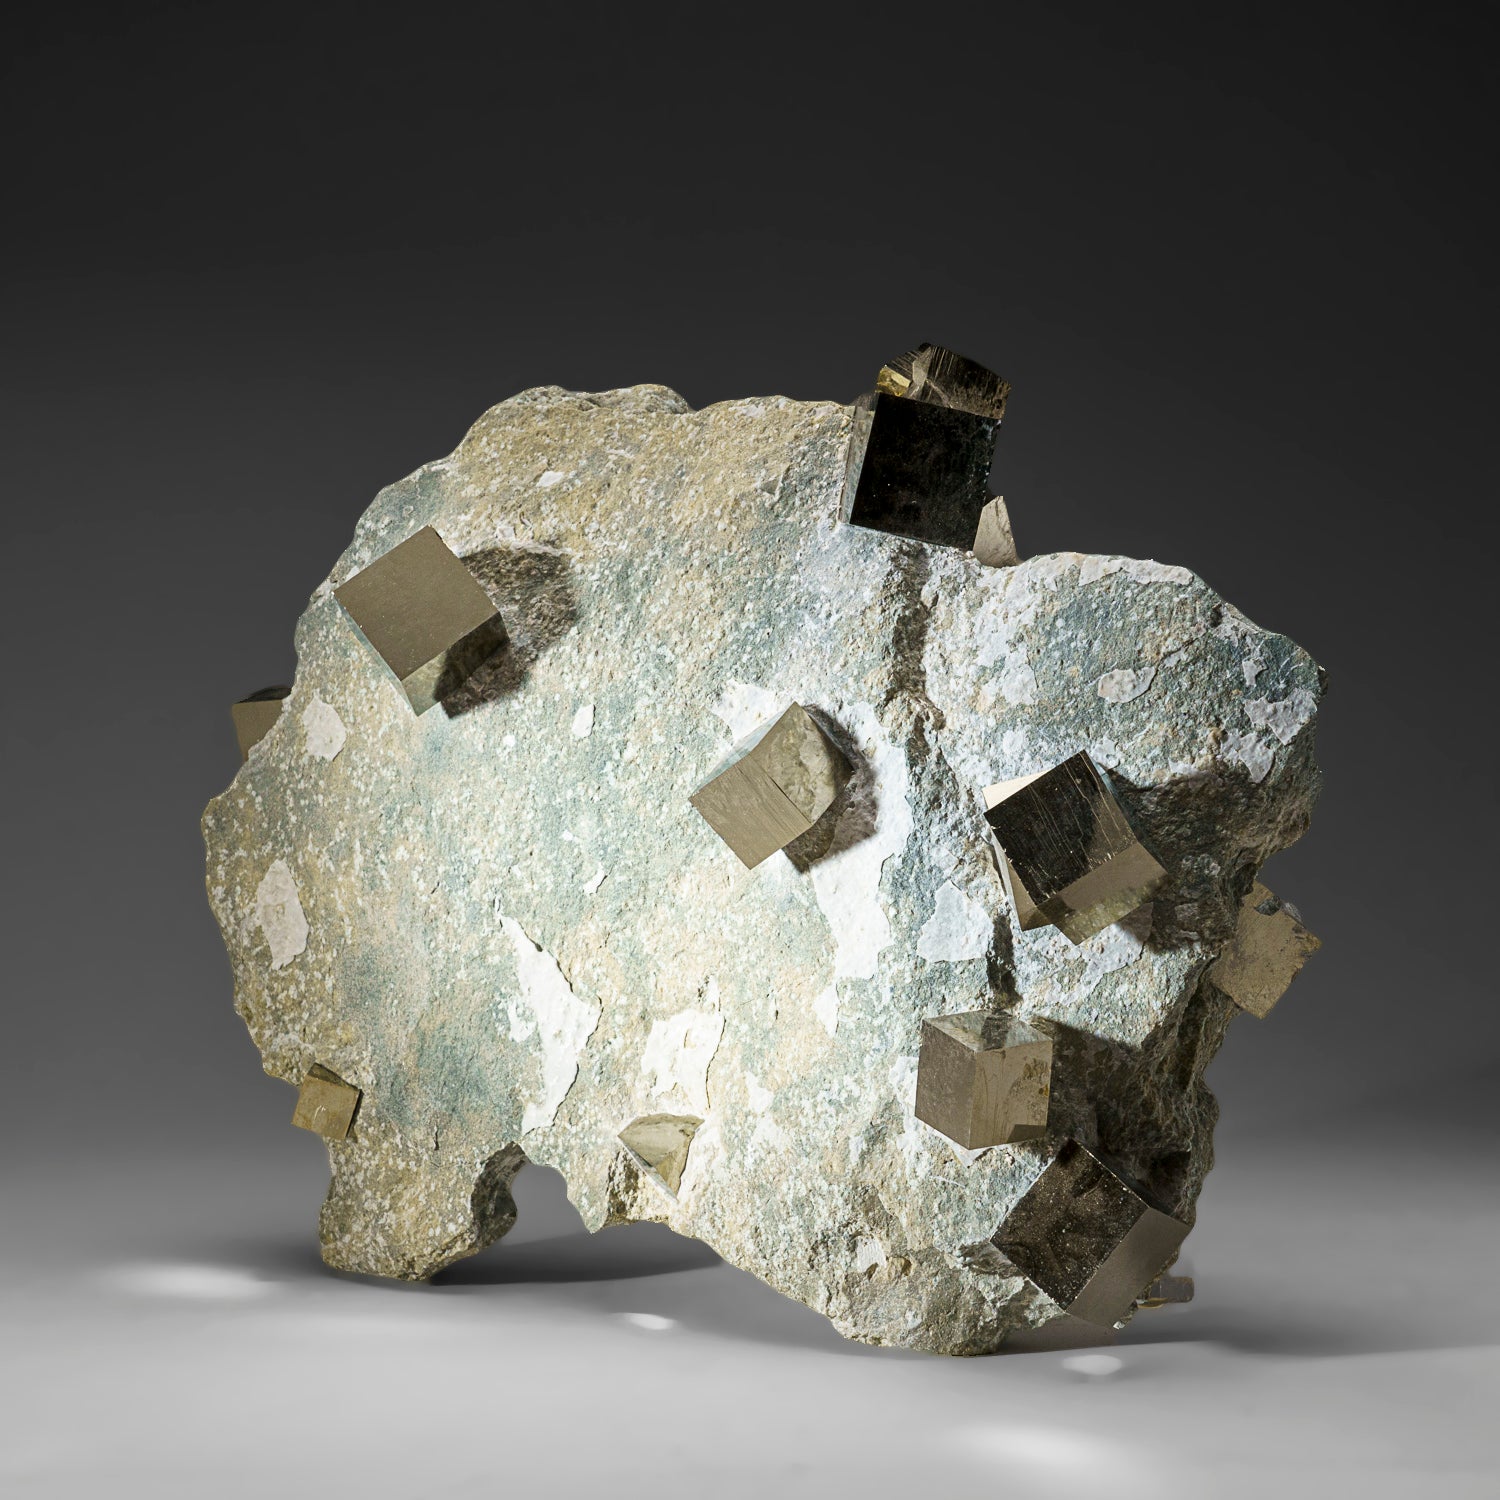 Genuine Pyrite Cubes on Basalt From Navajun, Spain (13 lbs)